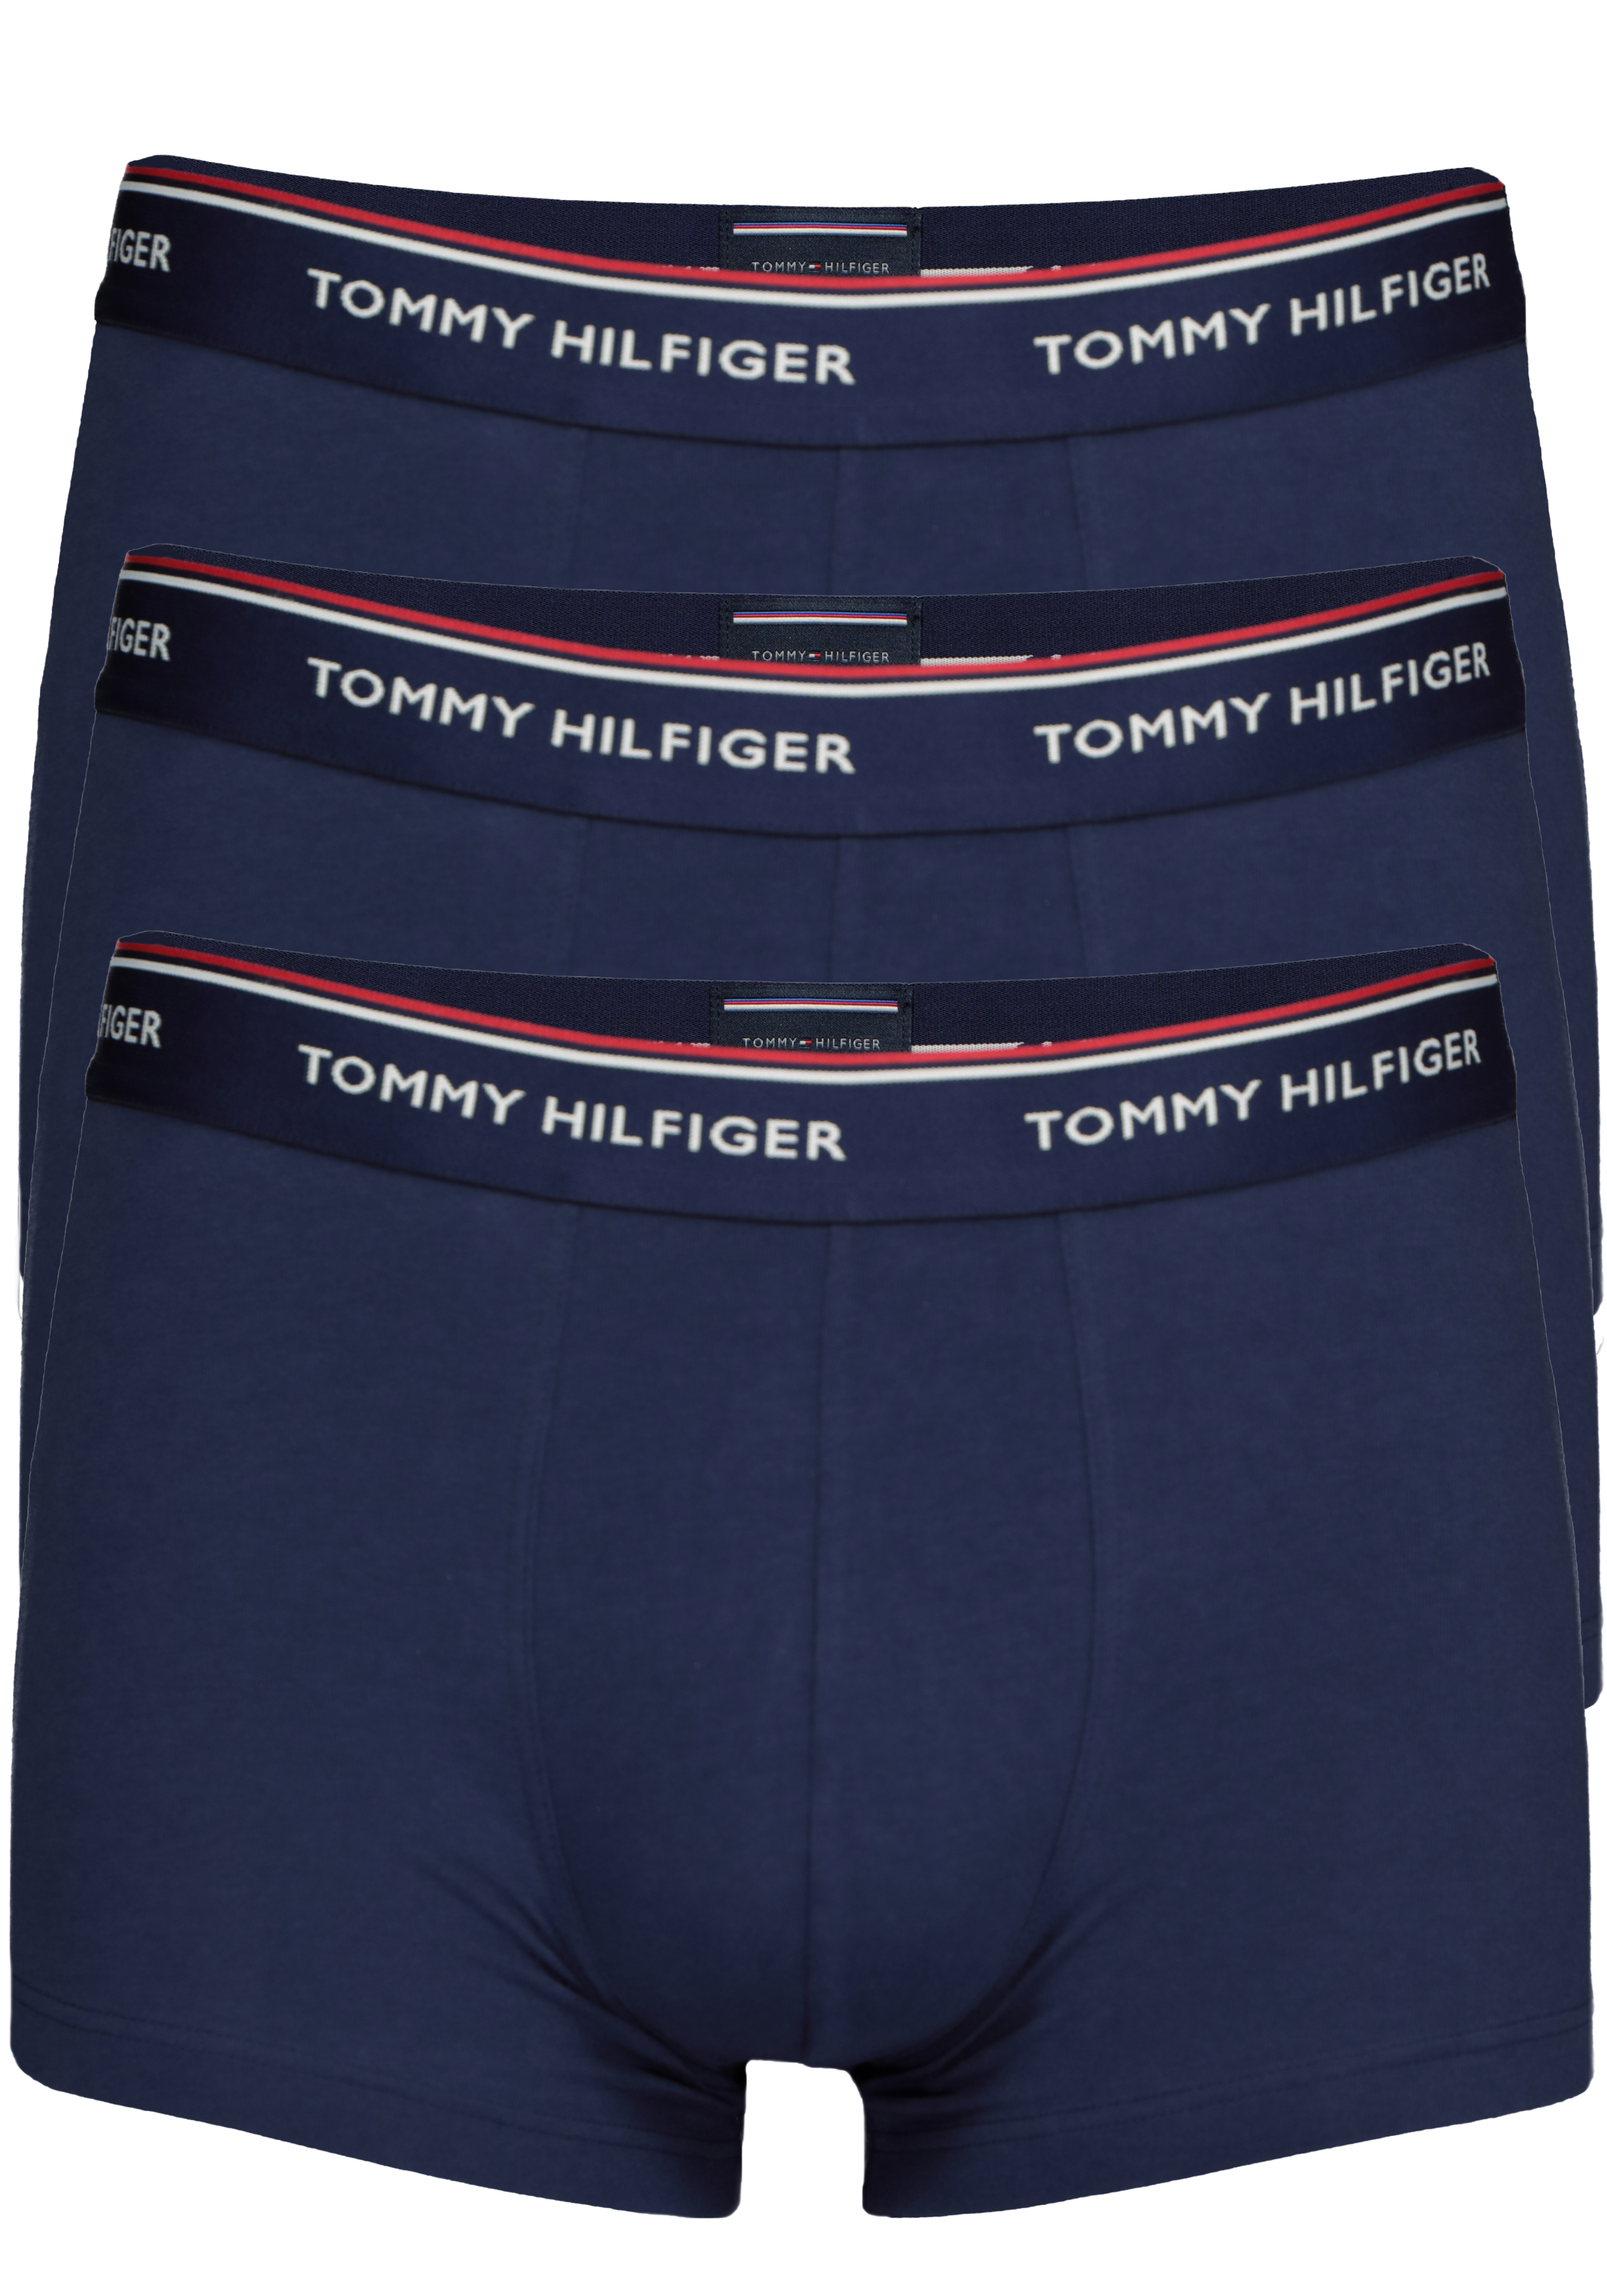 Elektronisch lijst Hedendaags Tommy Hilfiger boxershorts (3-pack), blauw - Gratis bezorgd